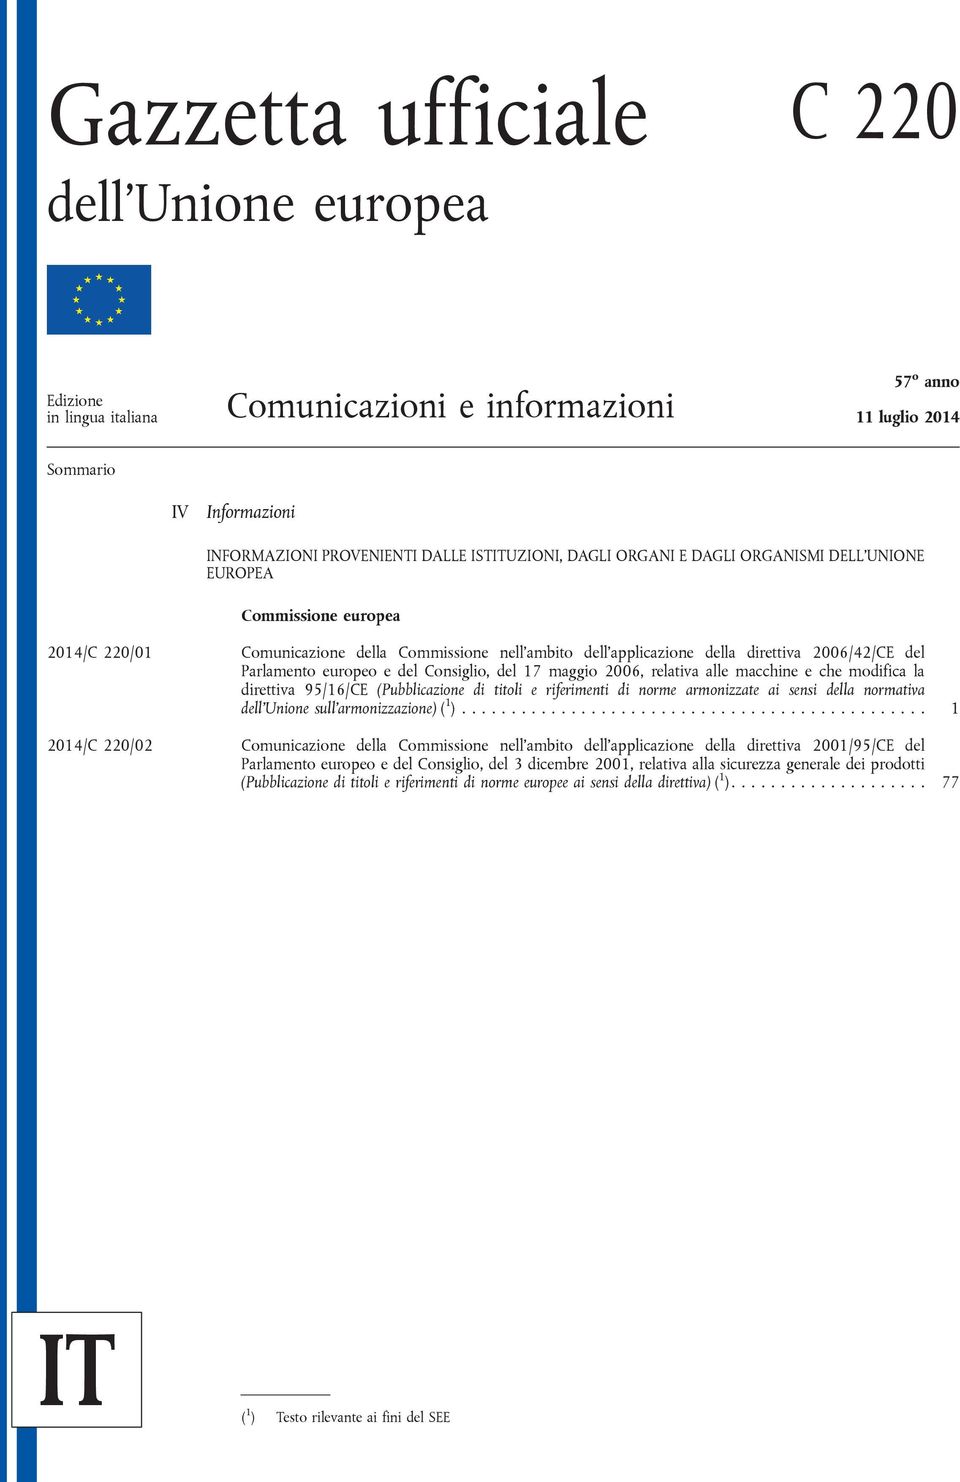 del Consiglio, del 17 maggio 2006, relativa alle macchine e che modifica la direttiva 95/16/CE (Pubblicazione di titoli e riferimenti di norme armonizzate ai sensi della normativa dell'unione